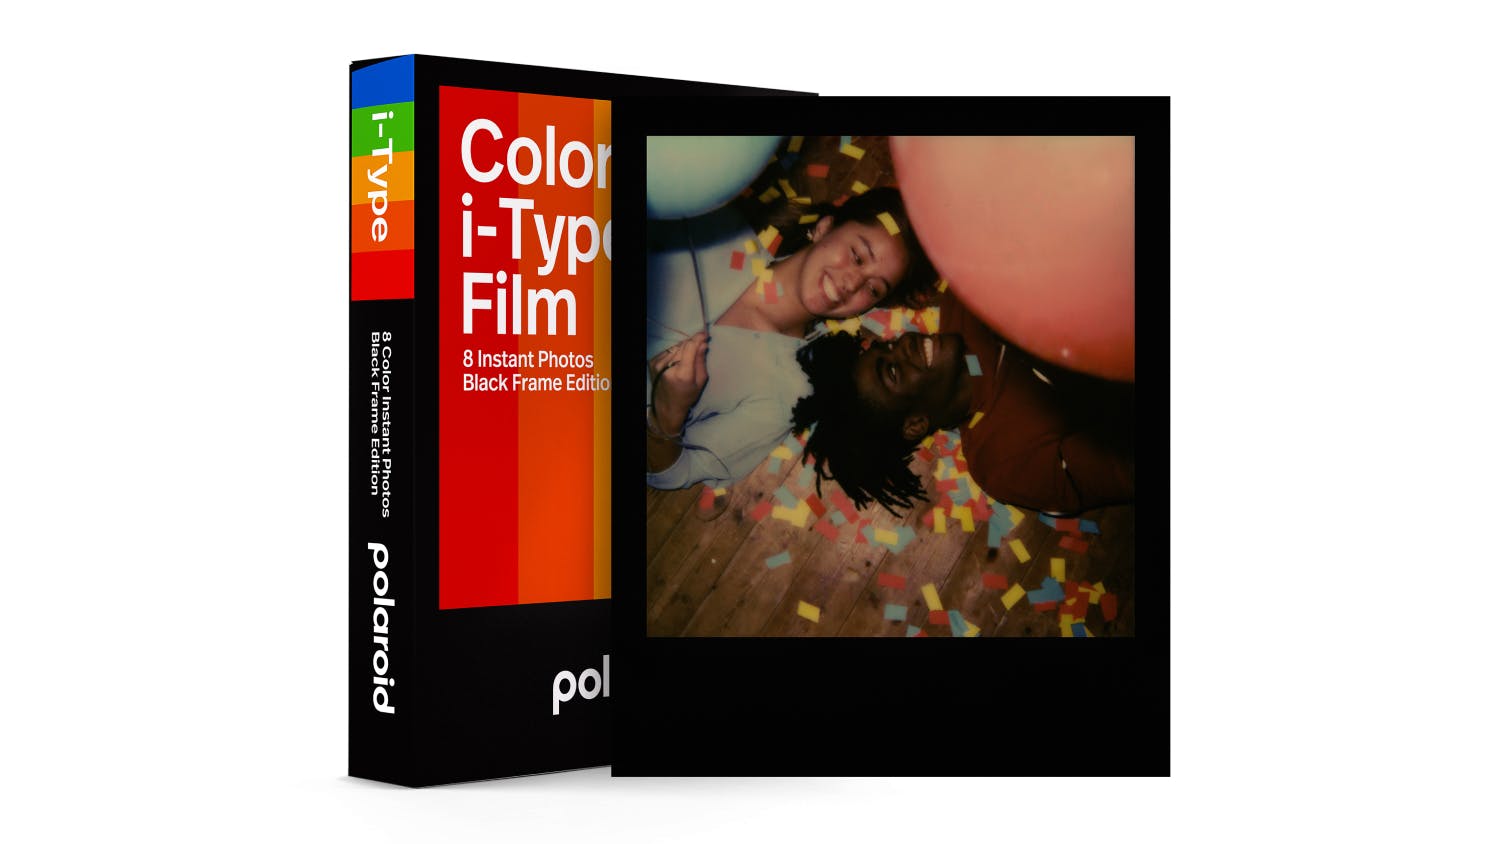 Polaroid  i-Type Colour Film with Black Frame - 1 Pack (8 Photos)